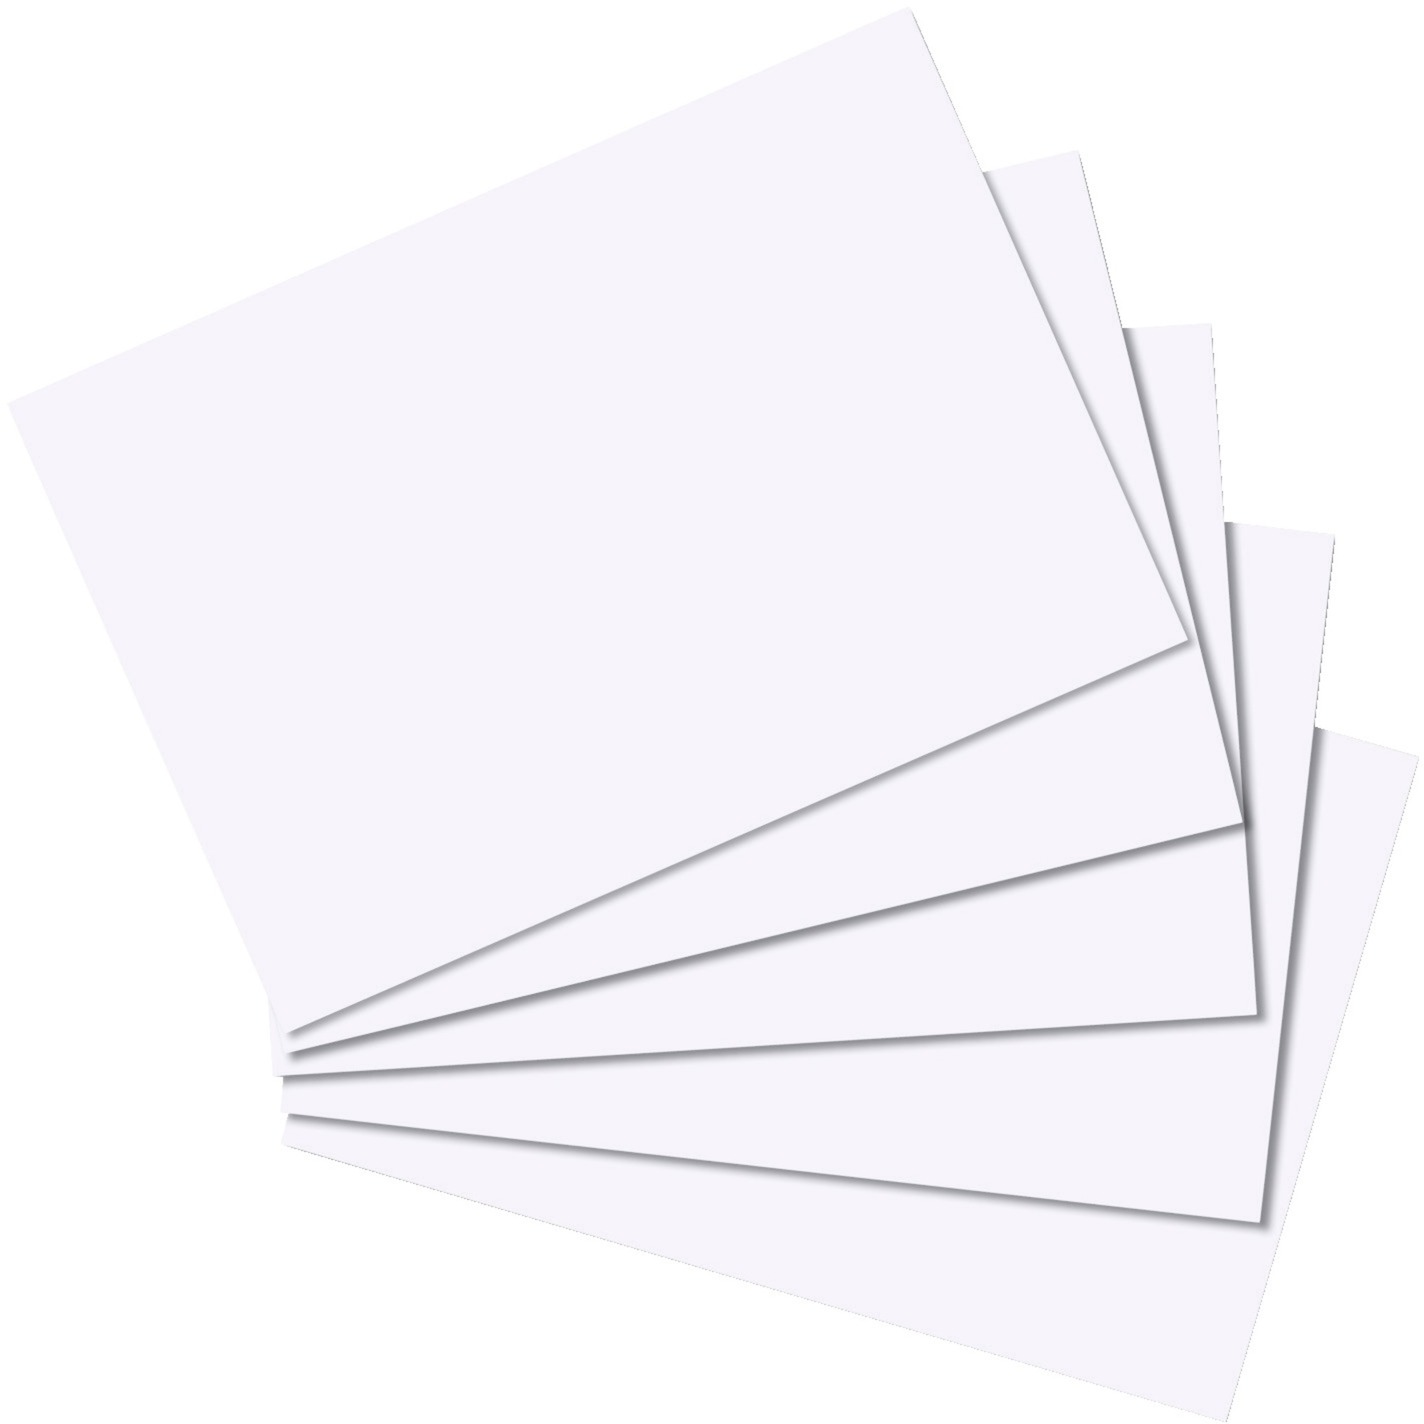 Image of Alternate - Karteikarten 100 Stück blanko A7, Papier online einkaufen bei Alternate